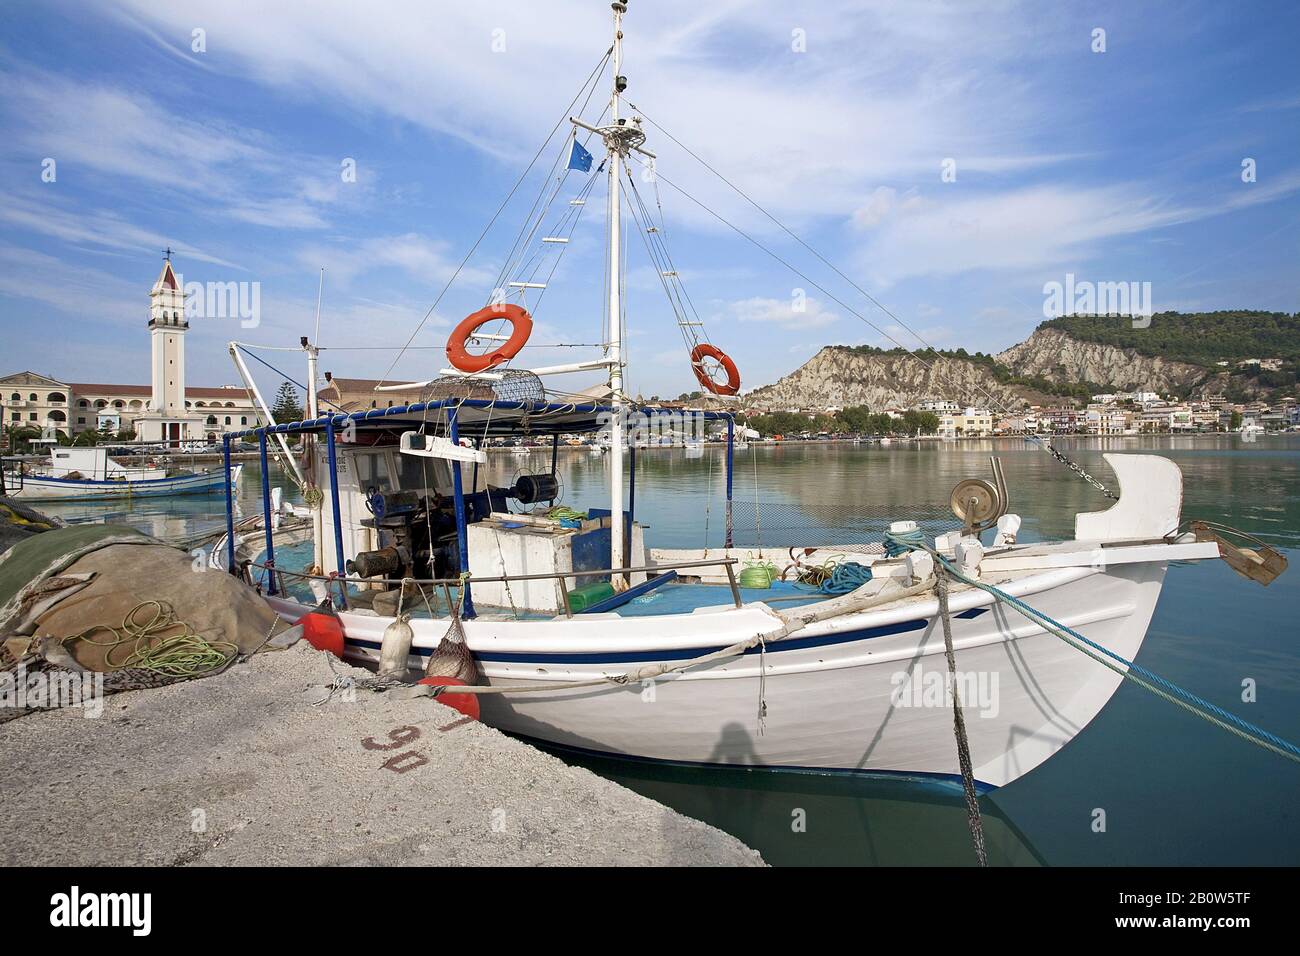 Bateau de pêche au port, derrière la cathédrale Agios Dionysios, la ville de Zante, l'île de Zante, Grèce Banque D'Images